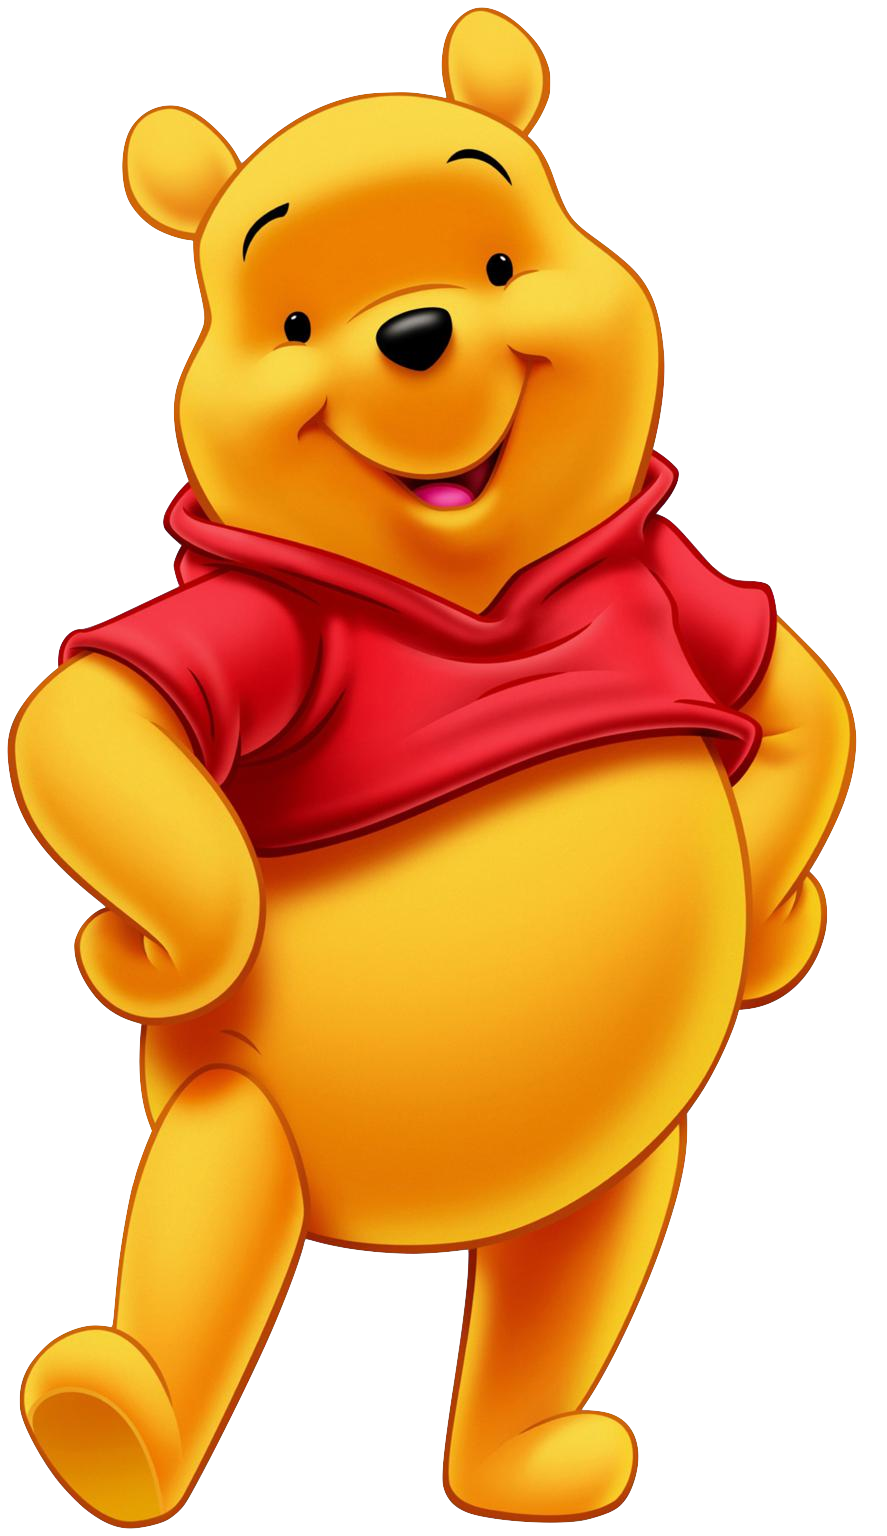 Winnie-the-Pooh - Wikipedia